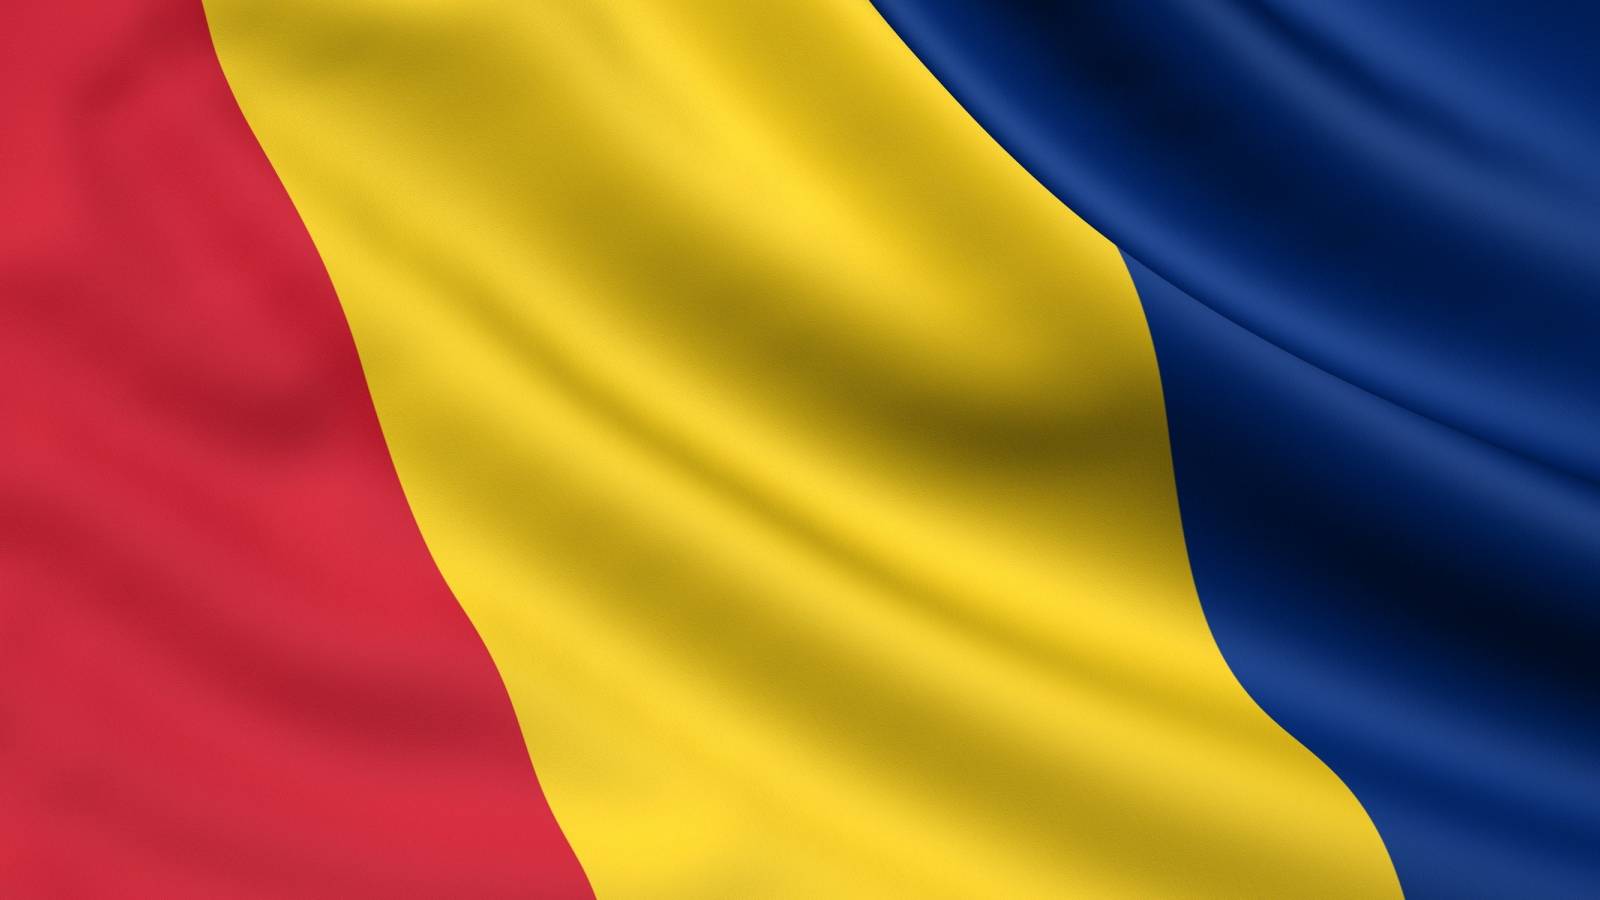 Evolutia Cazurilor noi de COVID-19 in Ultimele 7 Zile in Romania